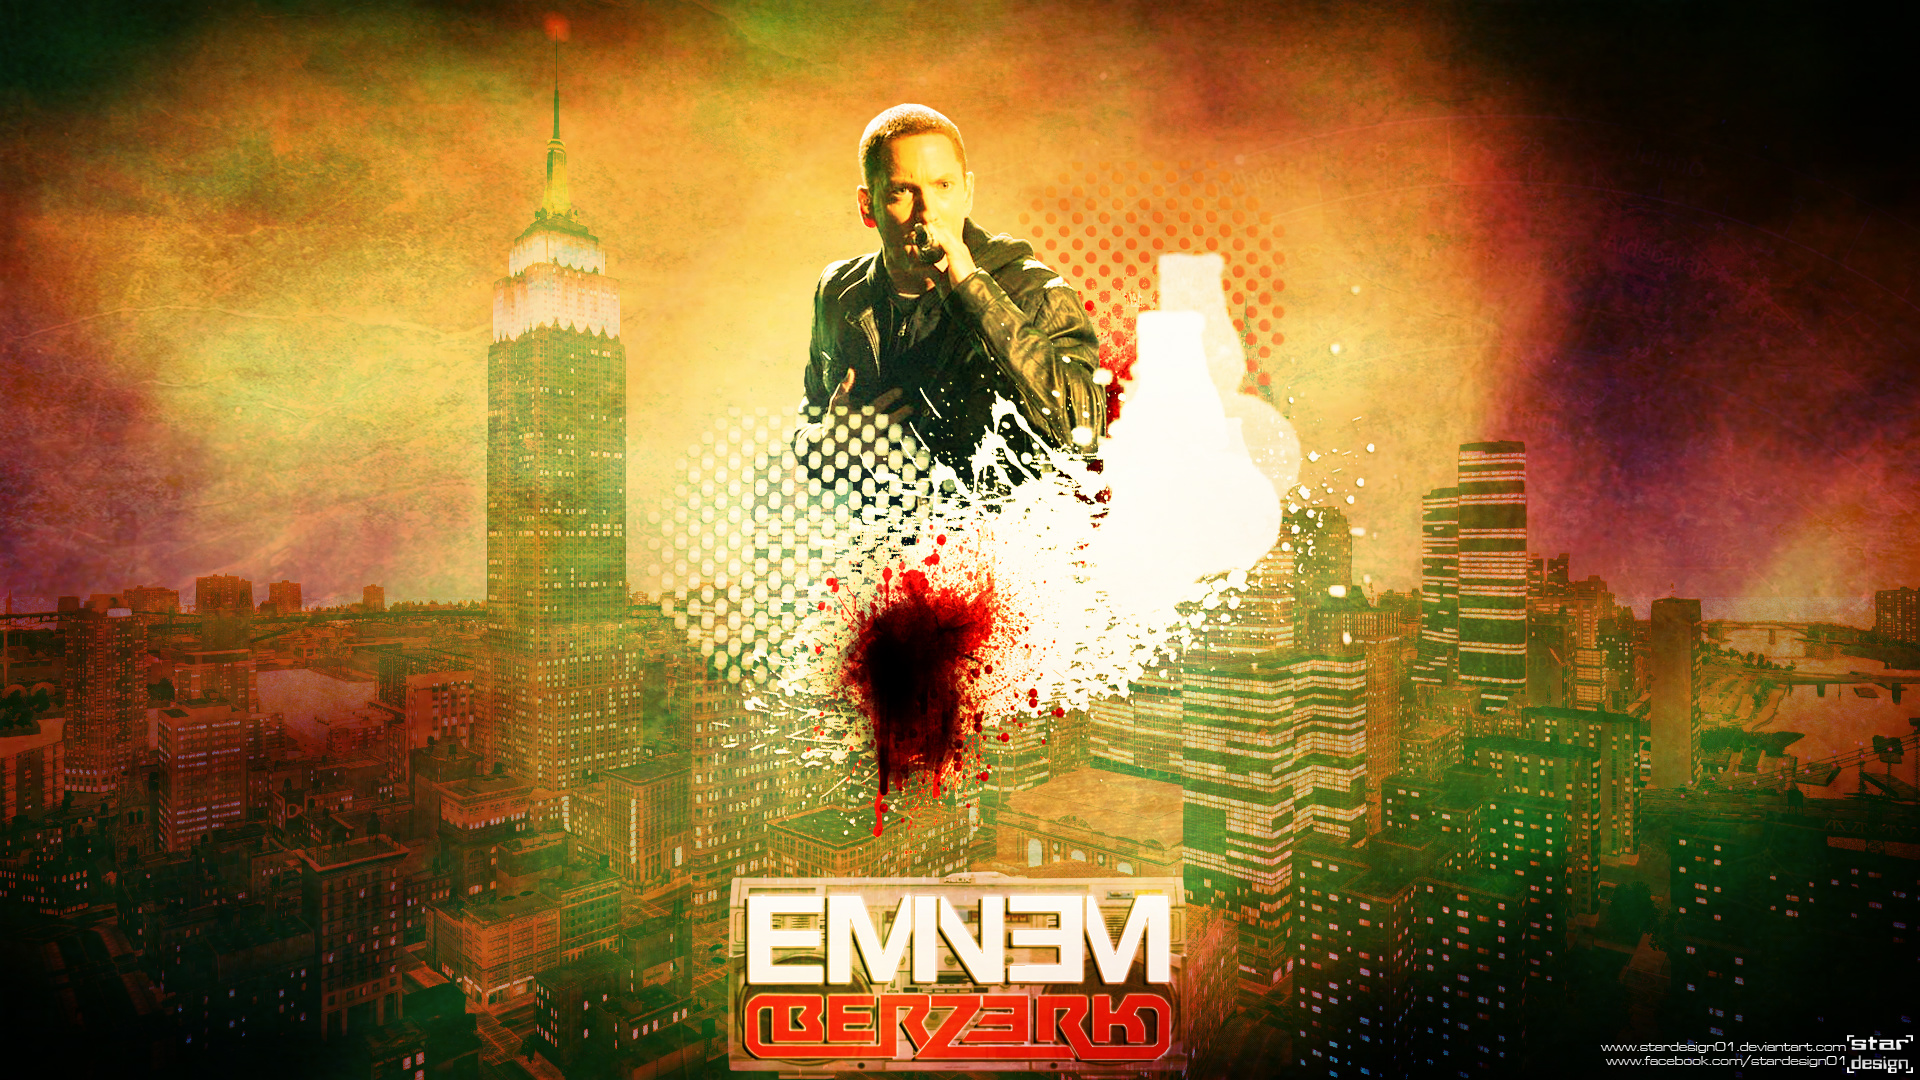 Eminem Berzerk Wallpaper! by stardesign01 on DeviantArt